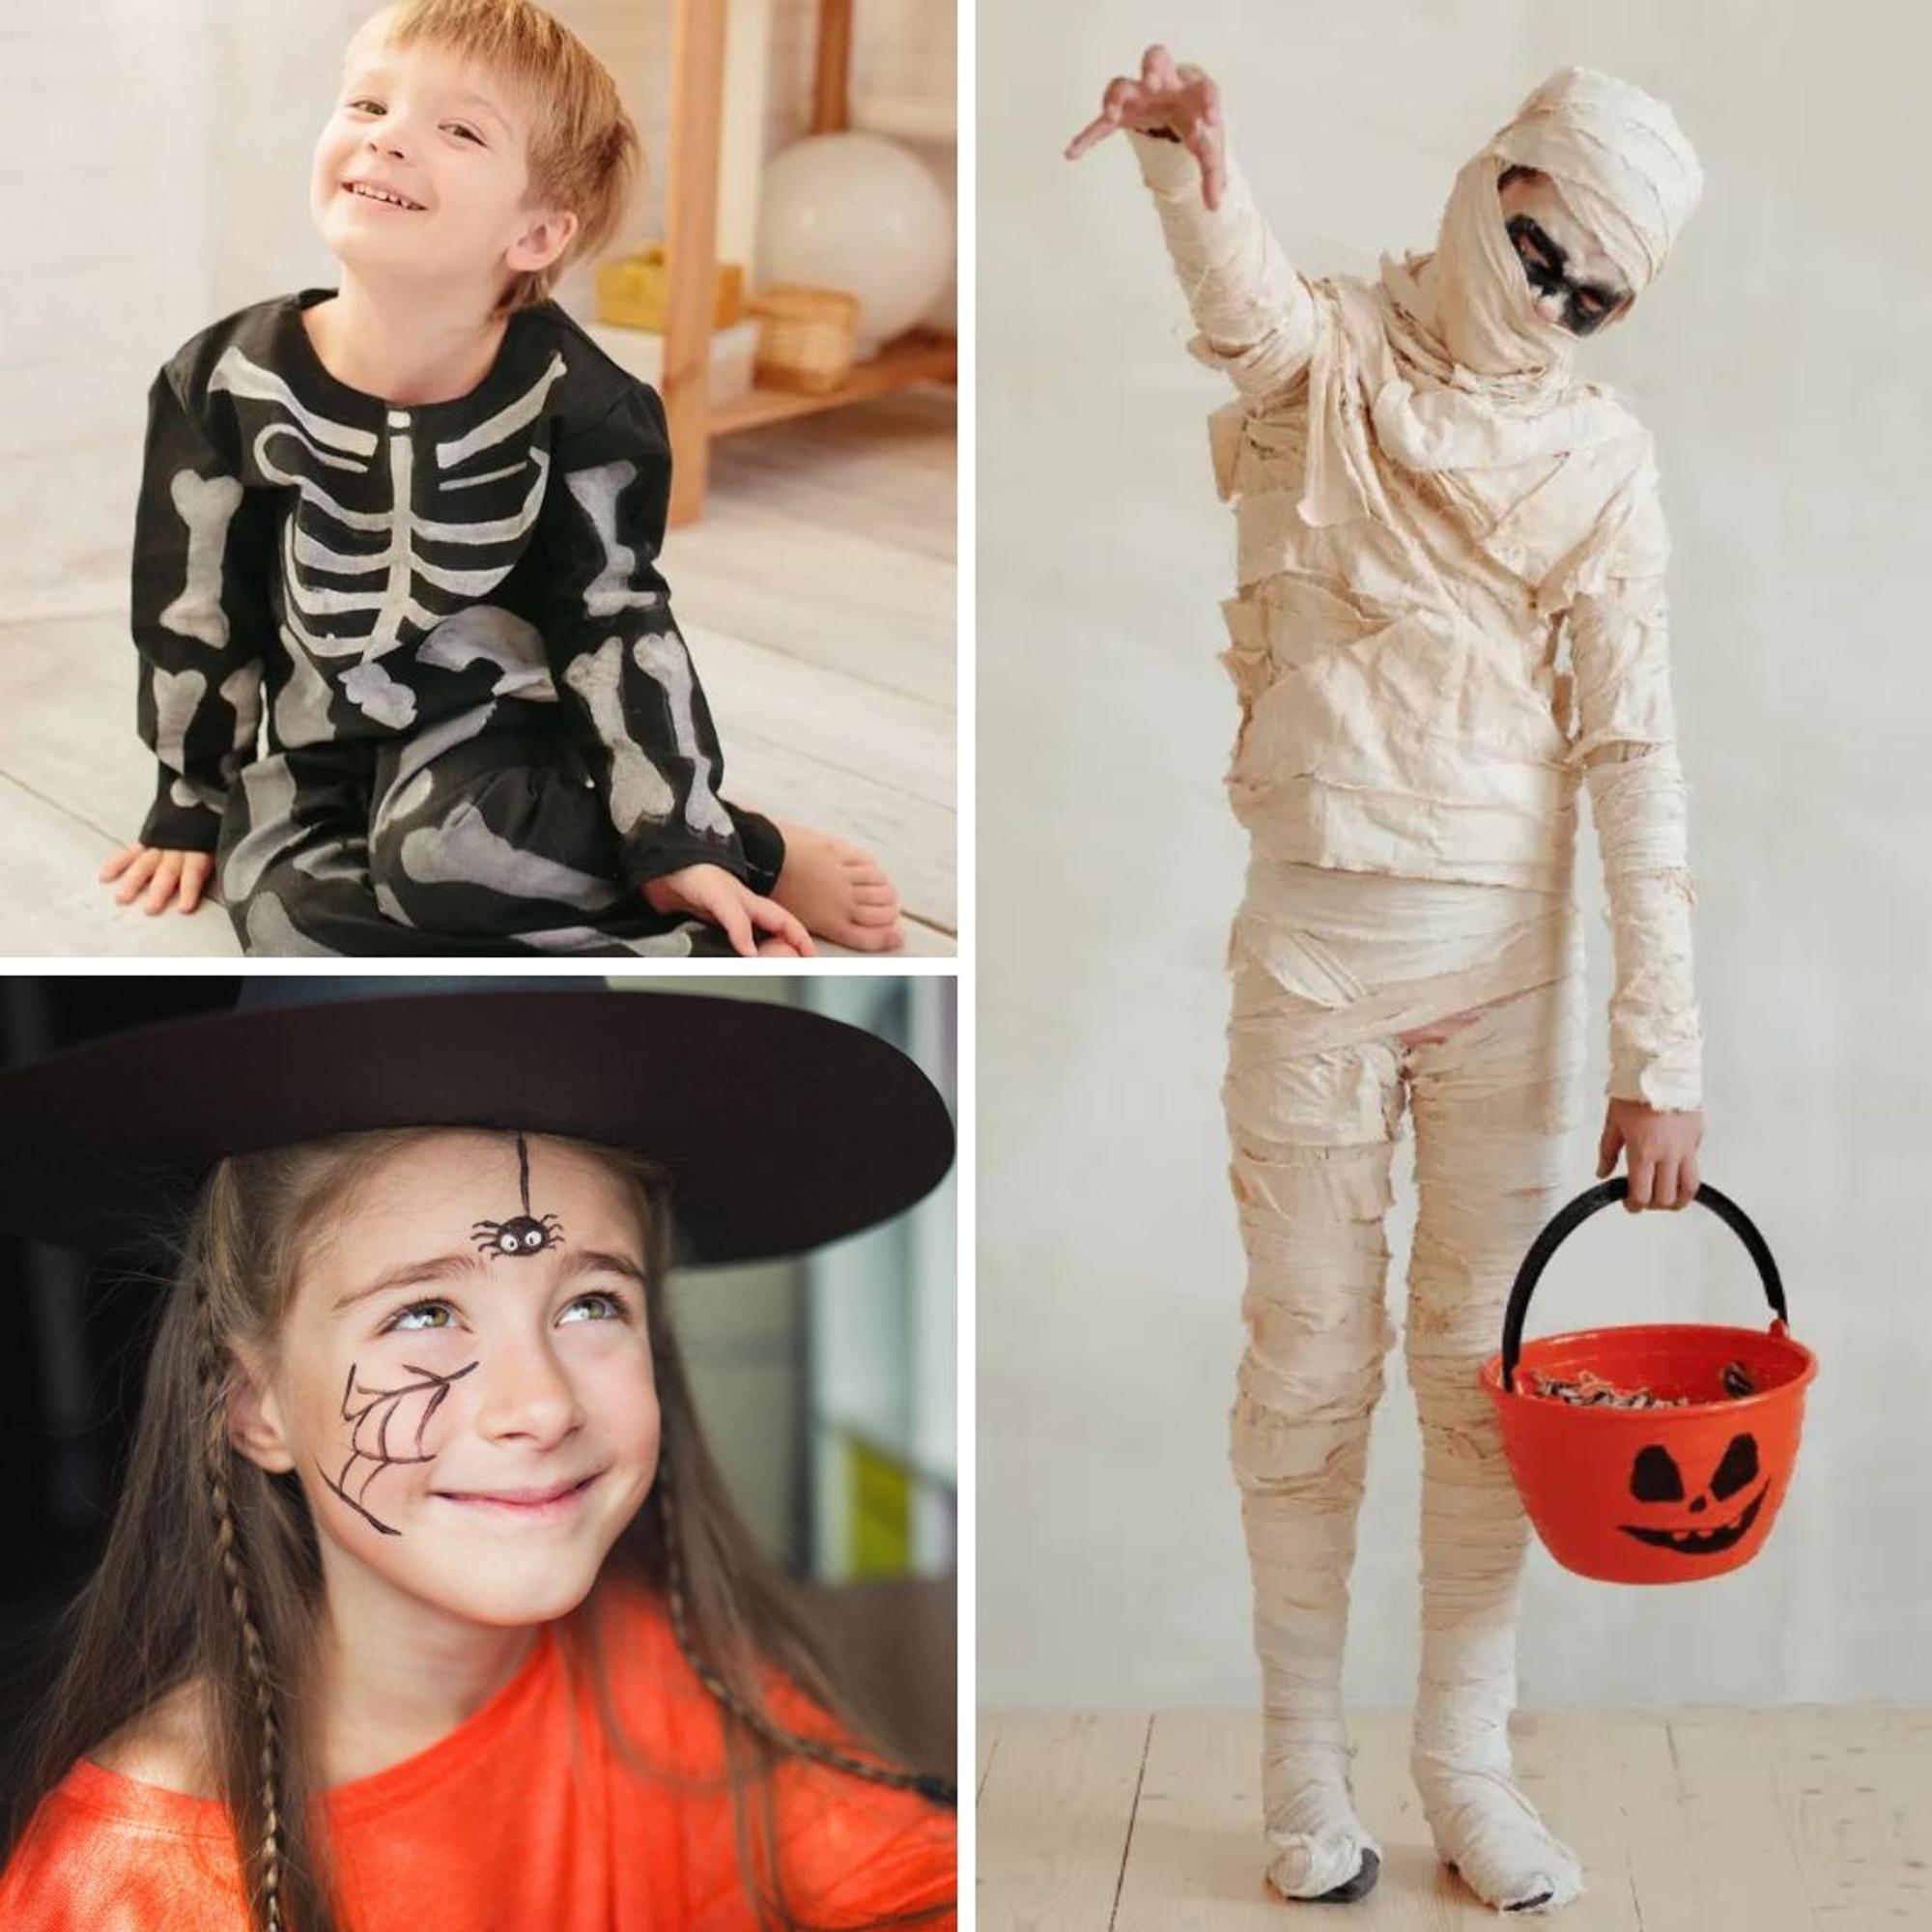 Kostümideen für Kinder, die Halloween feiern wollen